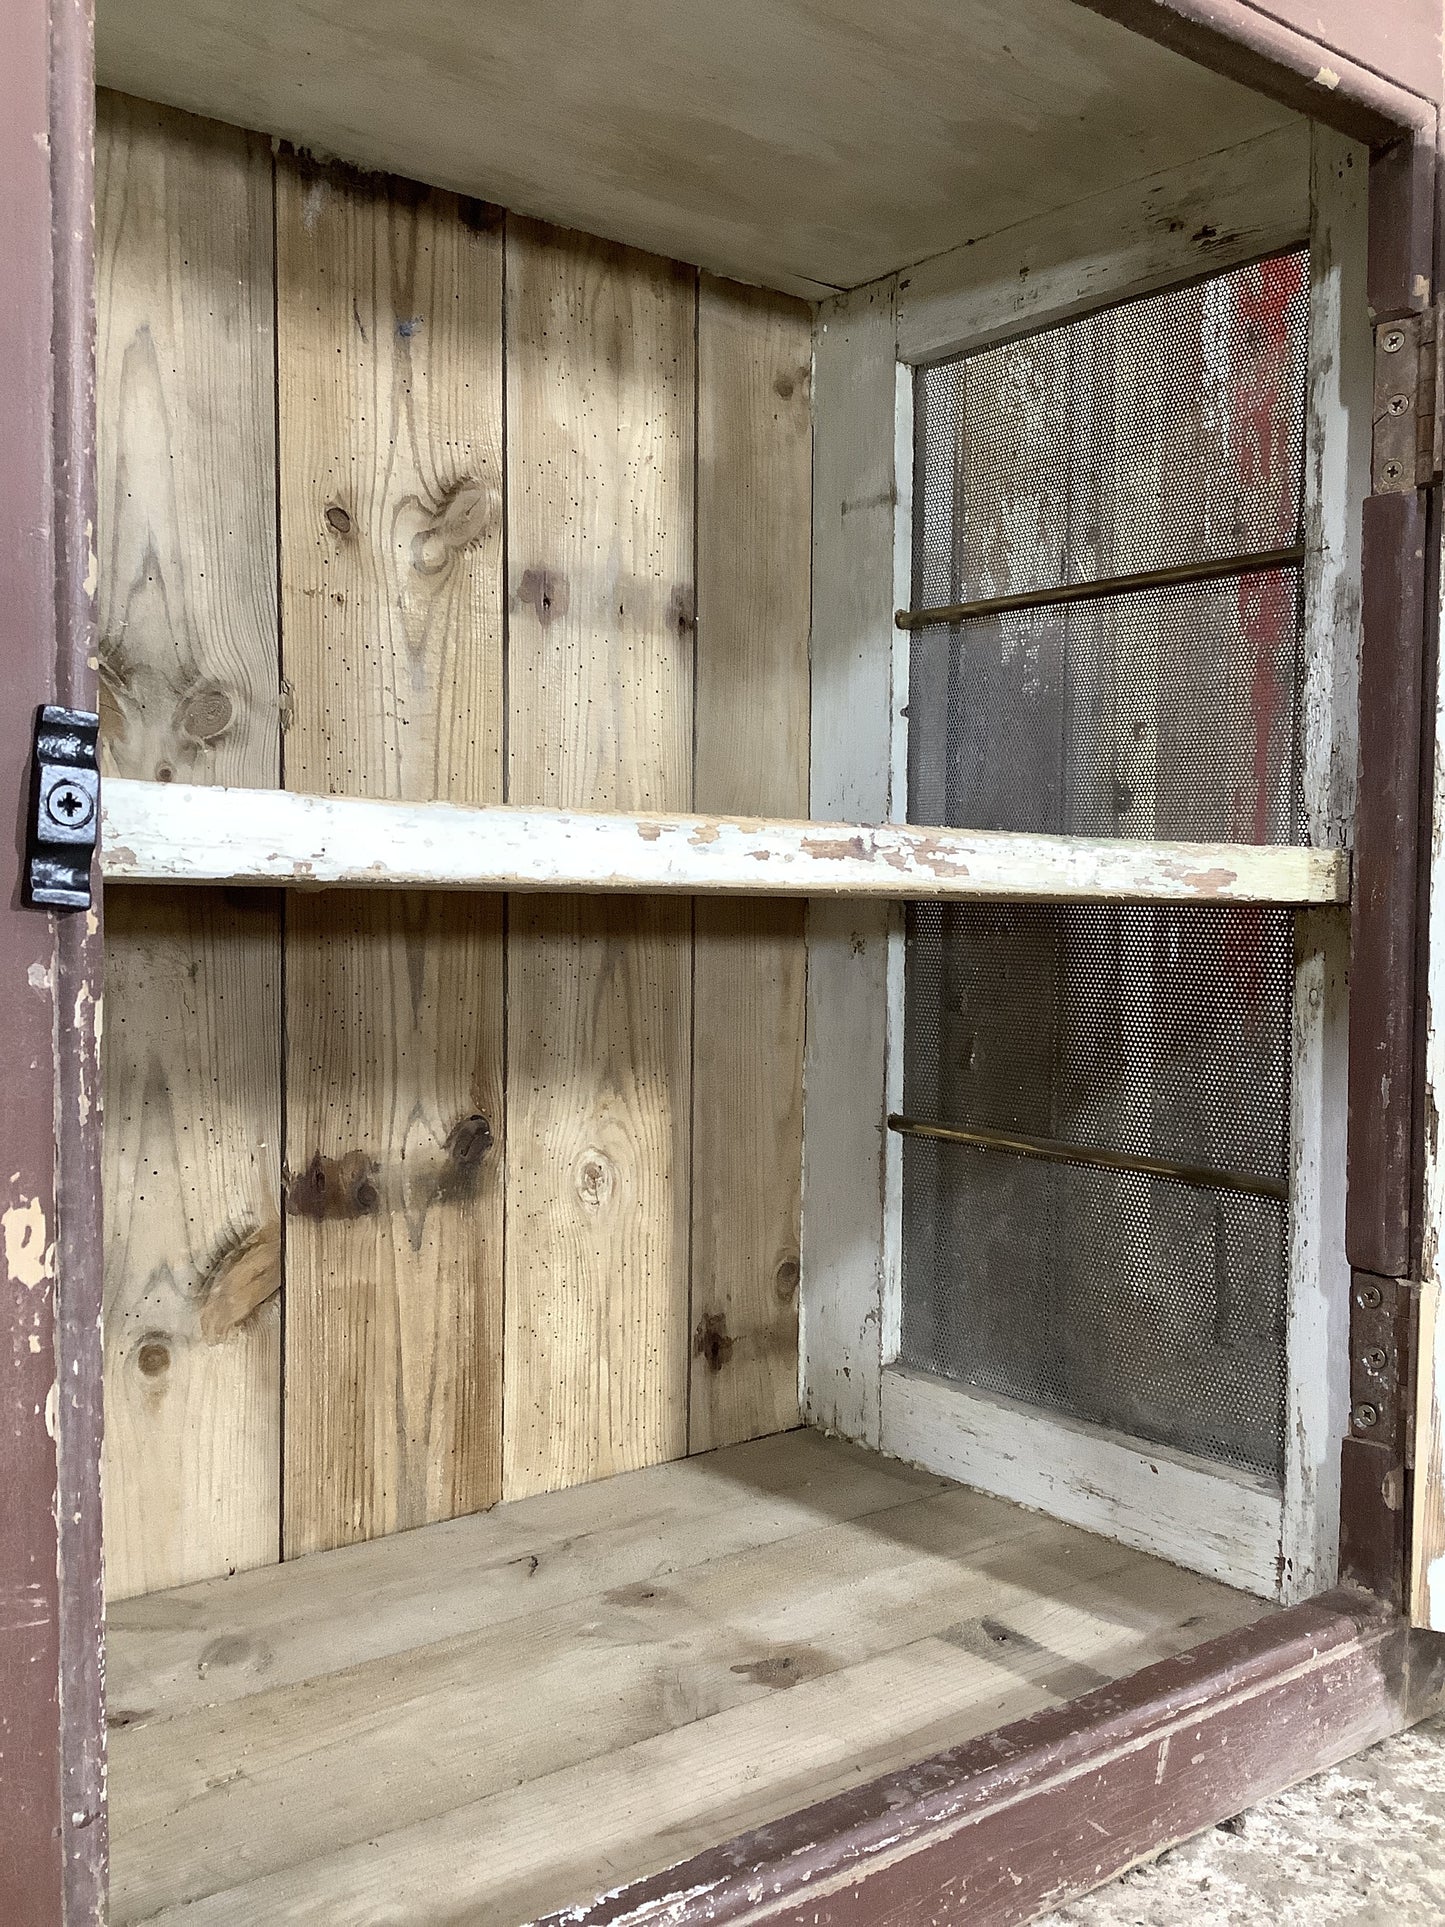 Victorian Pine Meat Safe With Zinc Mesh Kitchen Storage Cupboard 2'7"Hx4'6"W